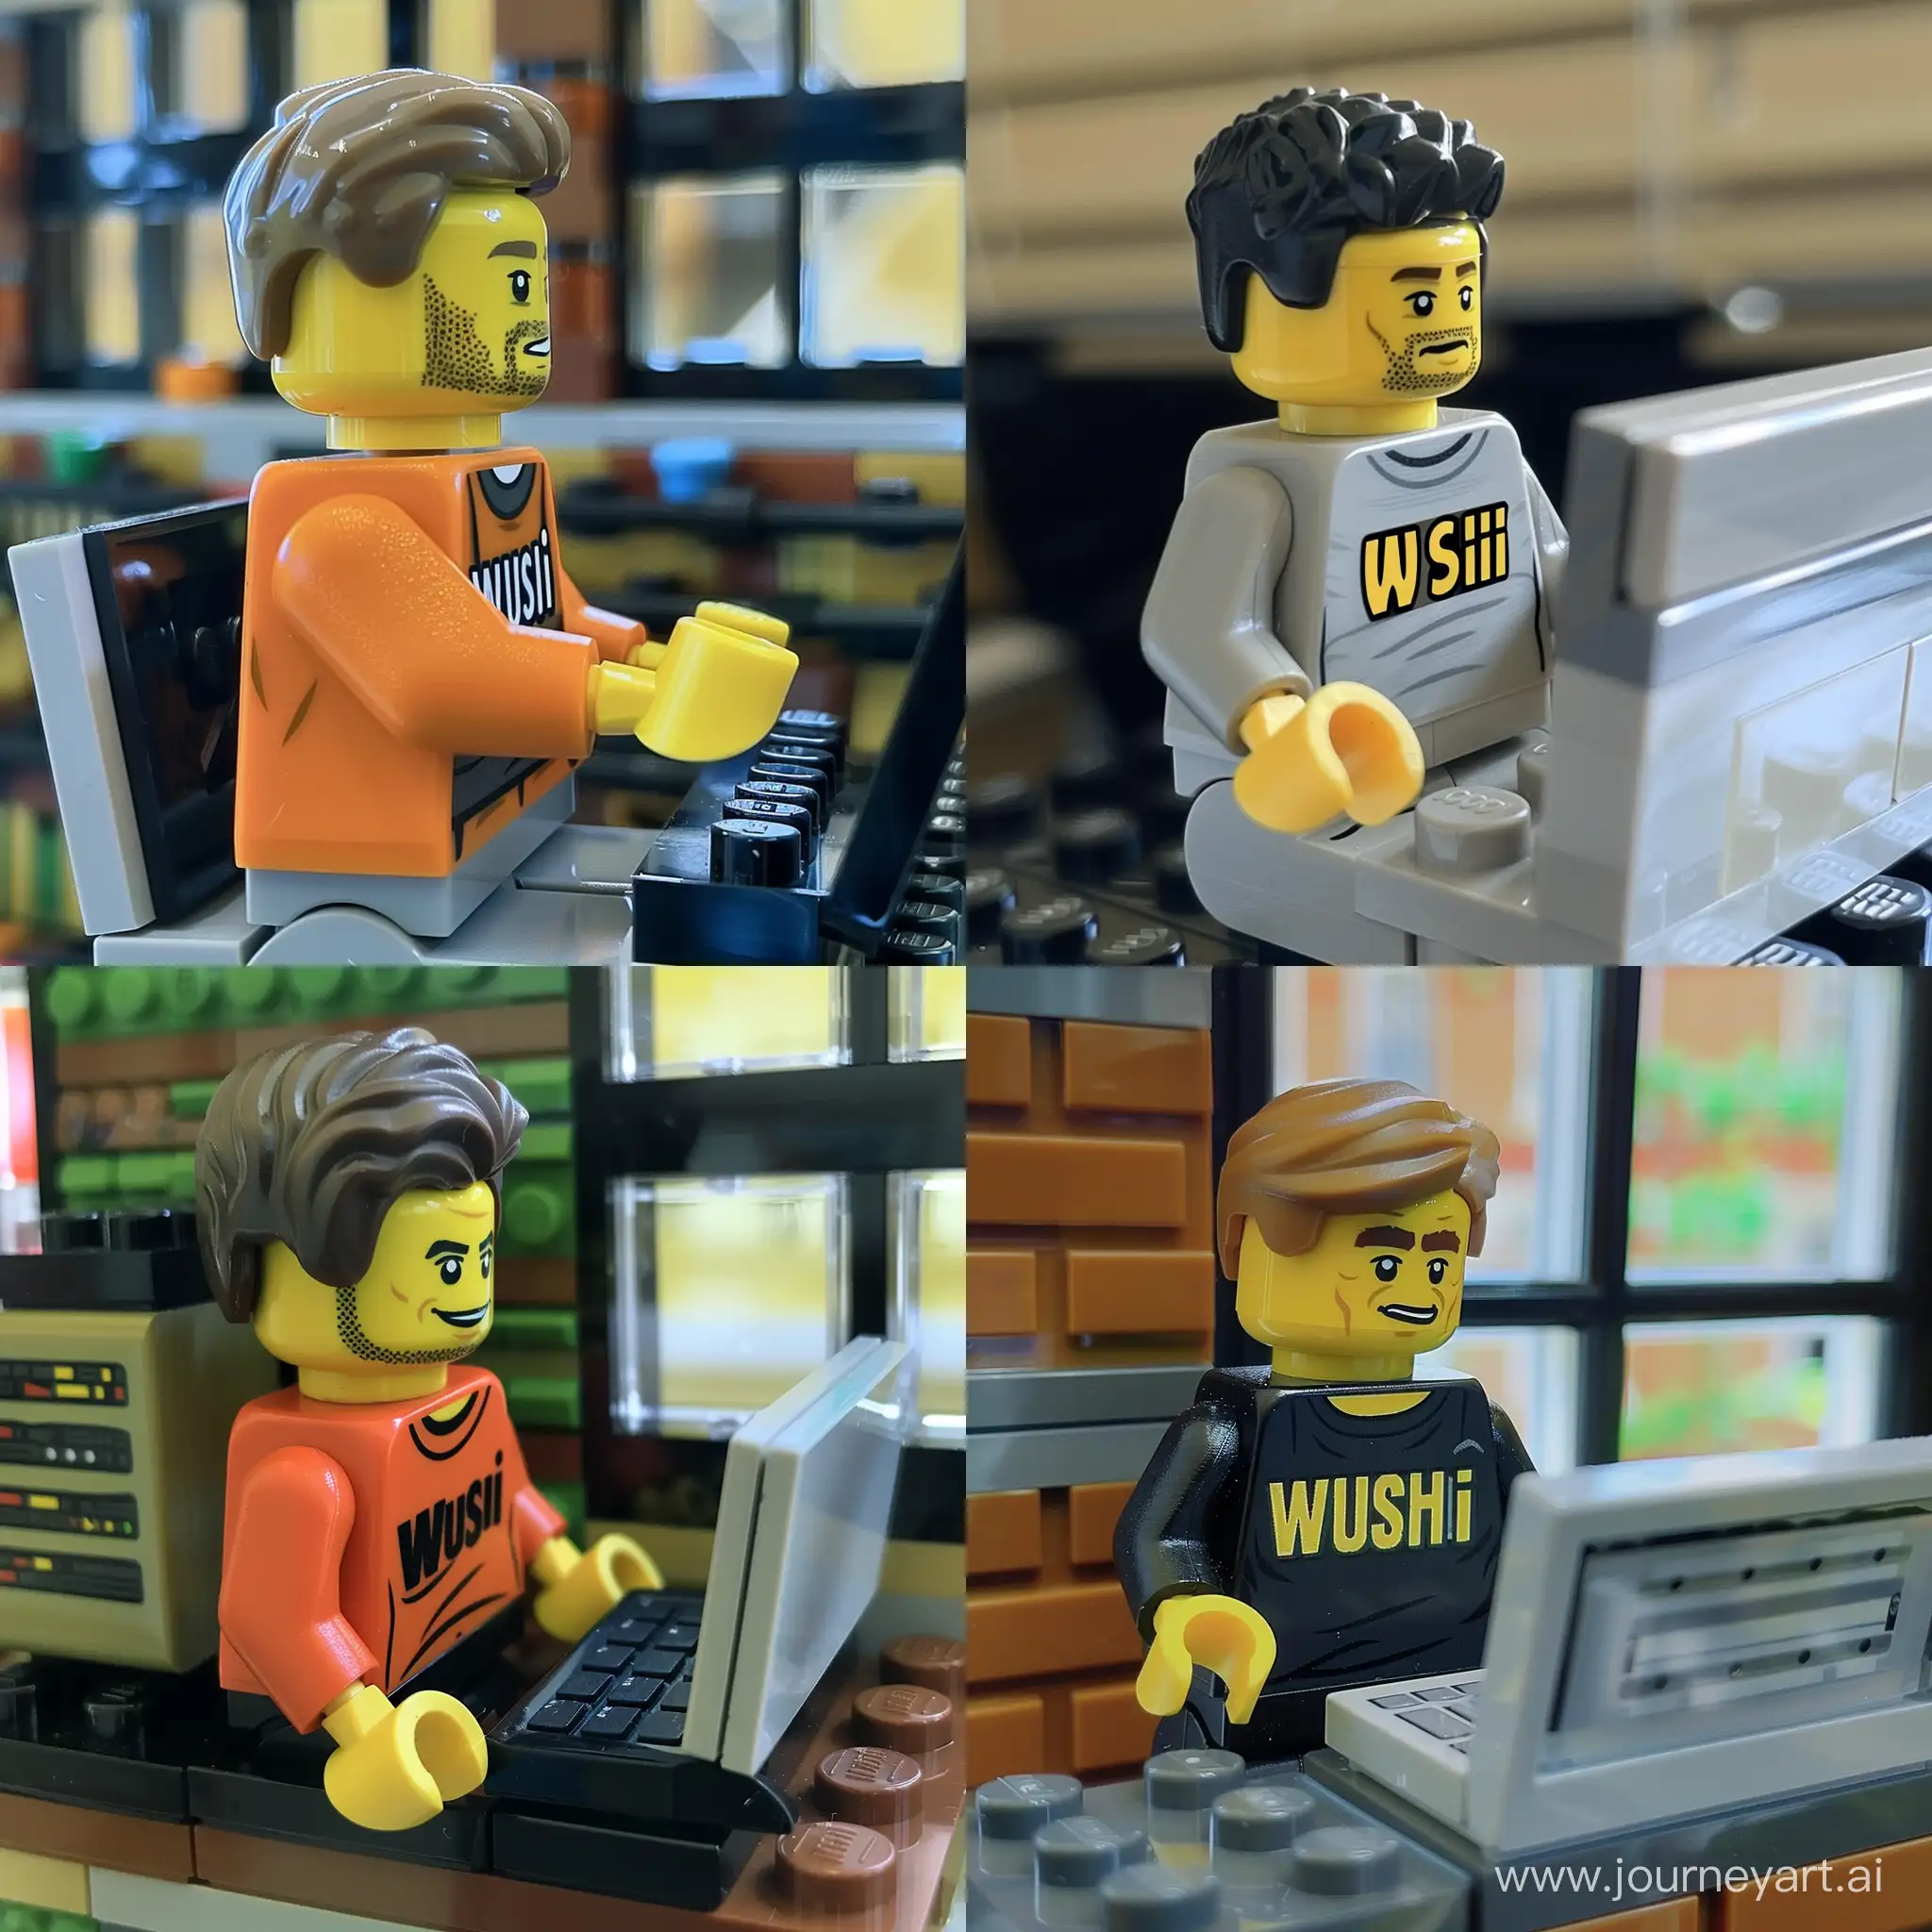 Lego-Man-Working-on-Laptop-with-Wushi-Tshirt